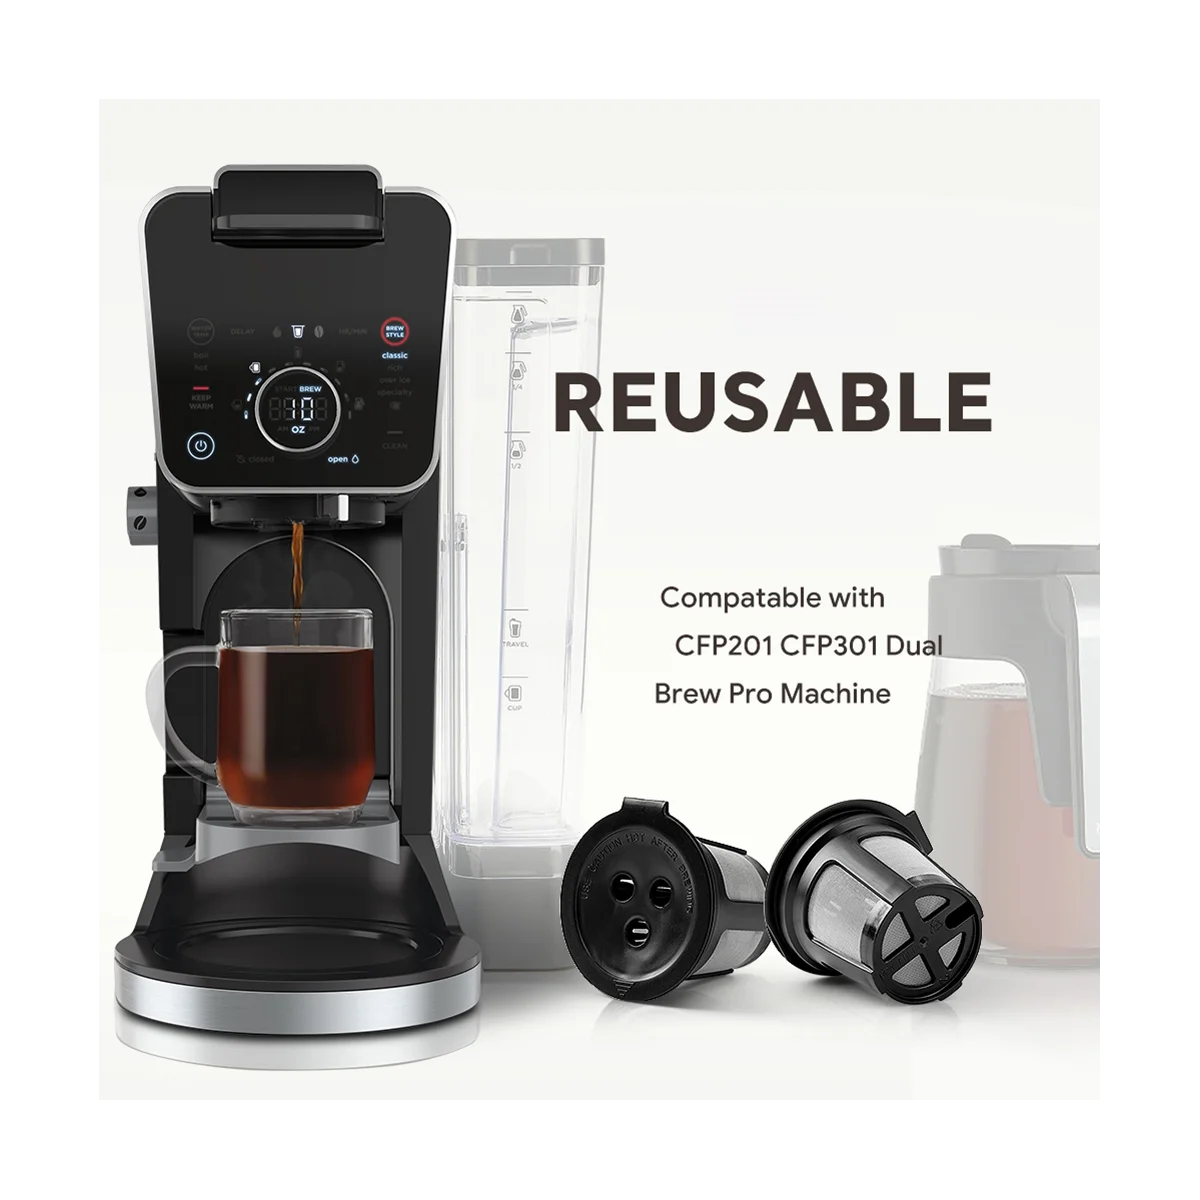 

10PCS Reusable Coffee Capsules for Ninja Dual Brew Espresso K Cup Capsules for Ninja CFP201 CFP301 Machine